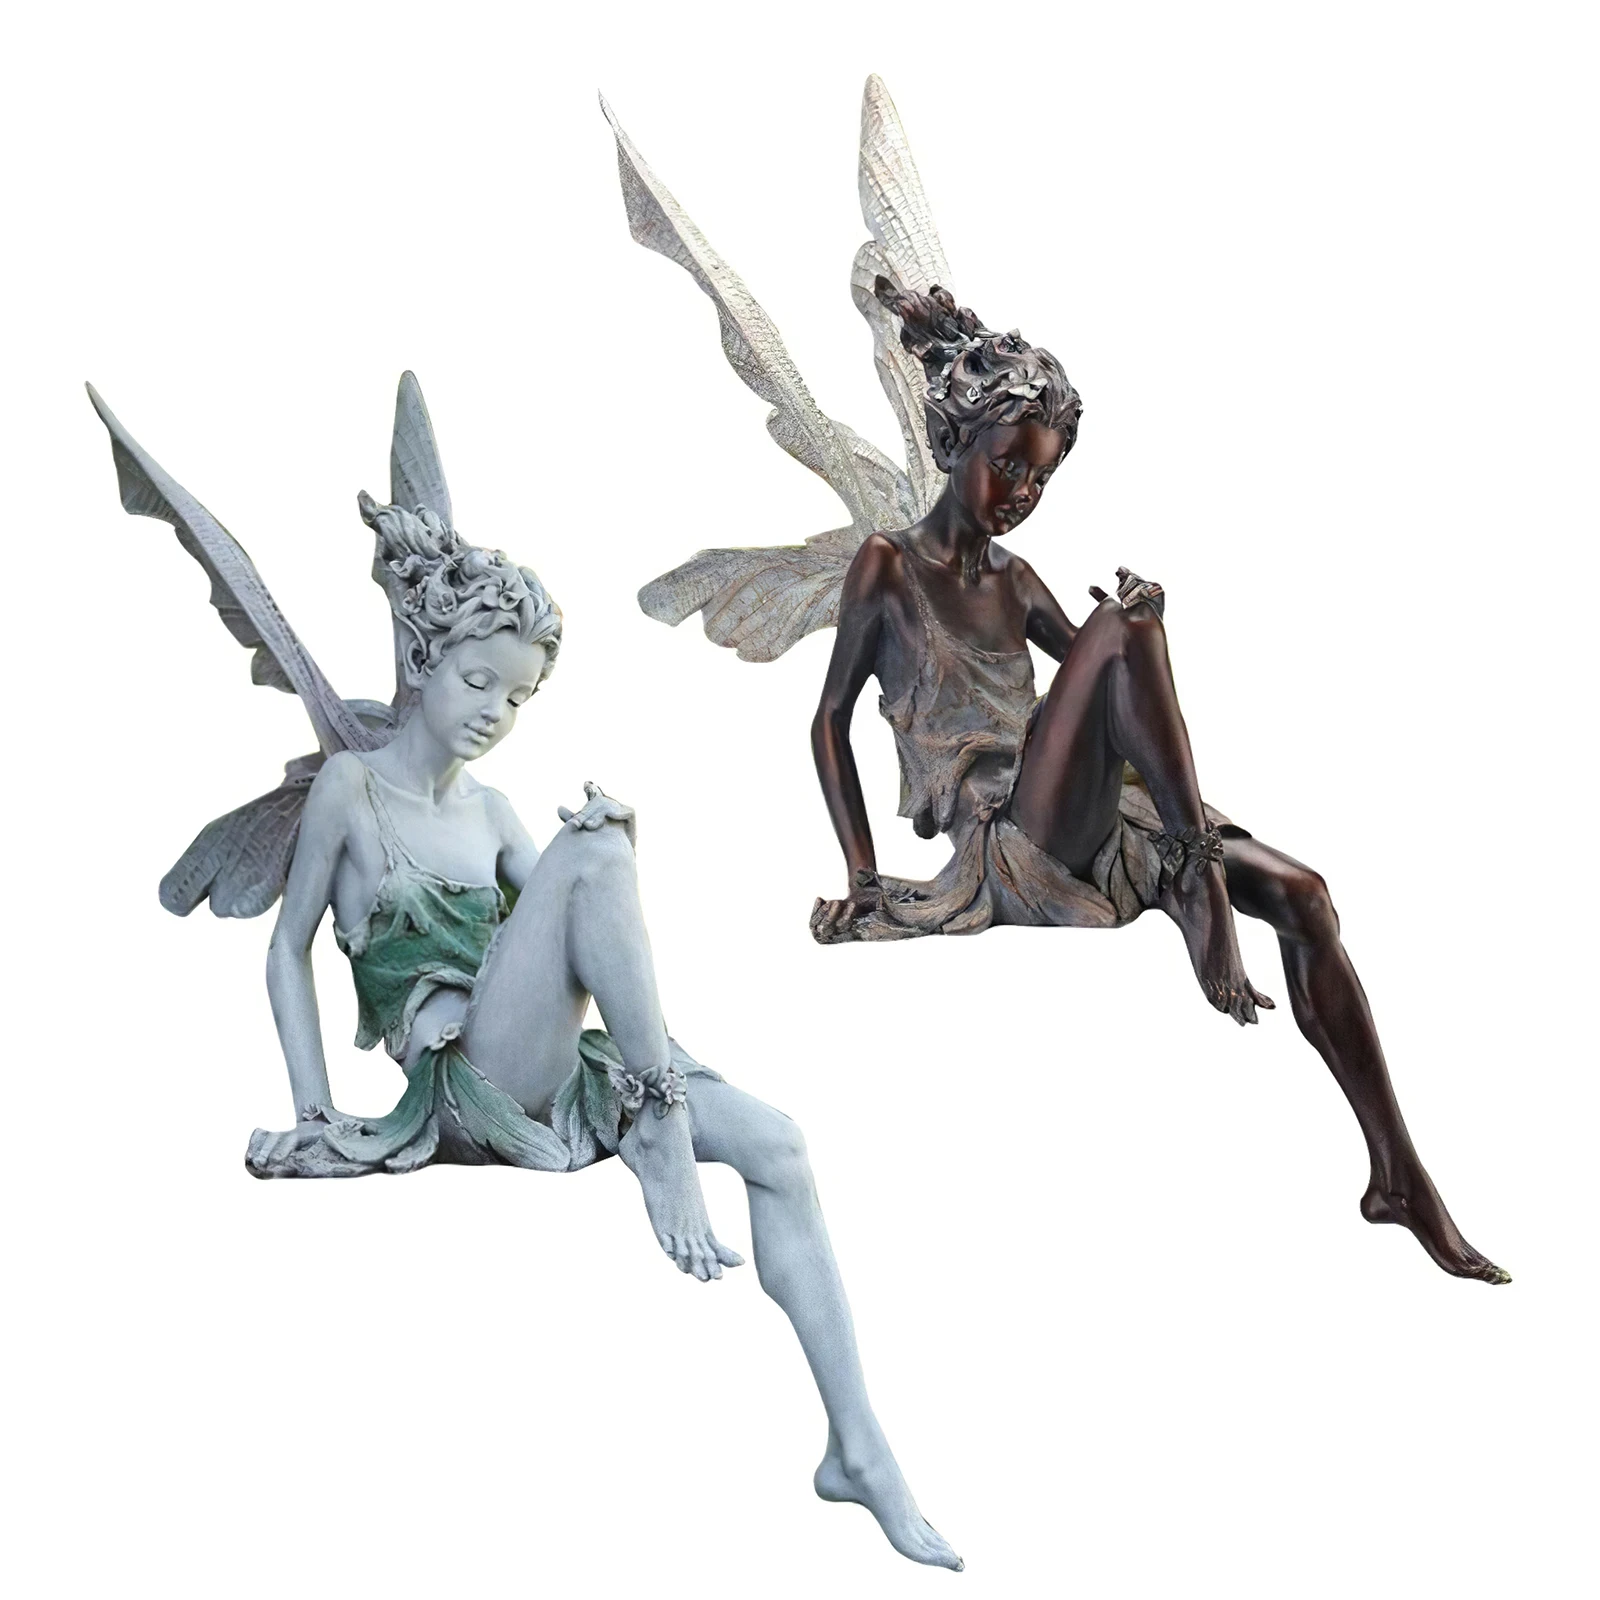 Resin Fairy Statue Ledge Decorative Figurine Shelf Porch Sculpture Craft